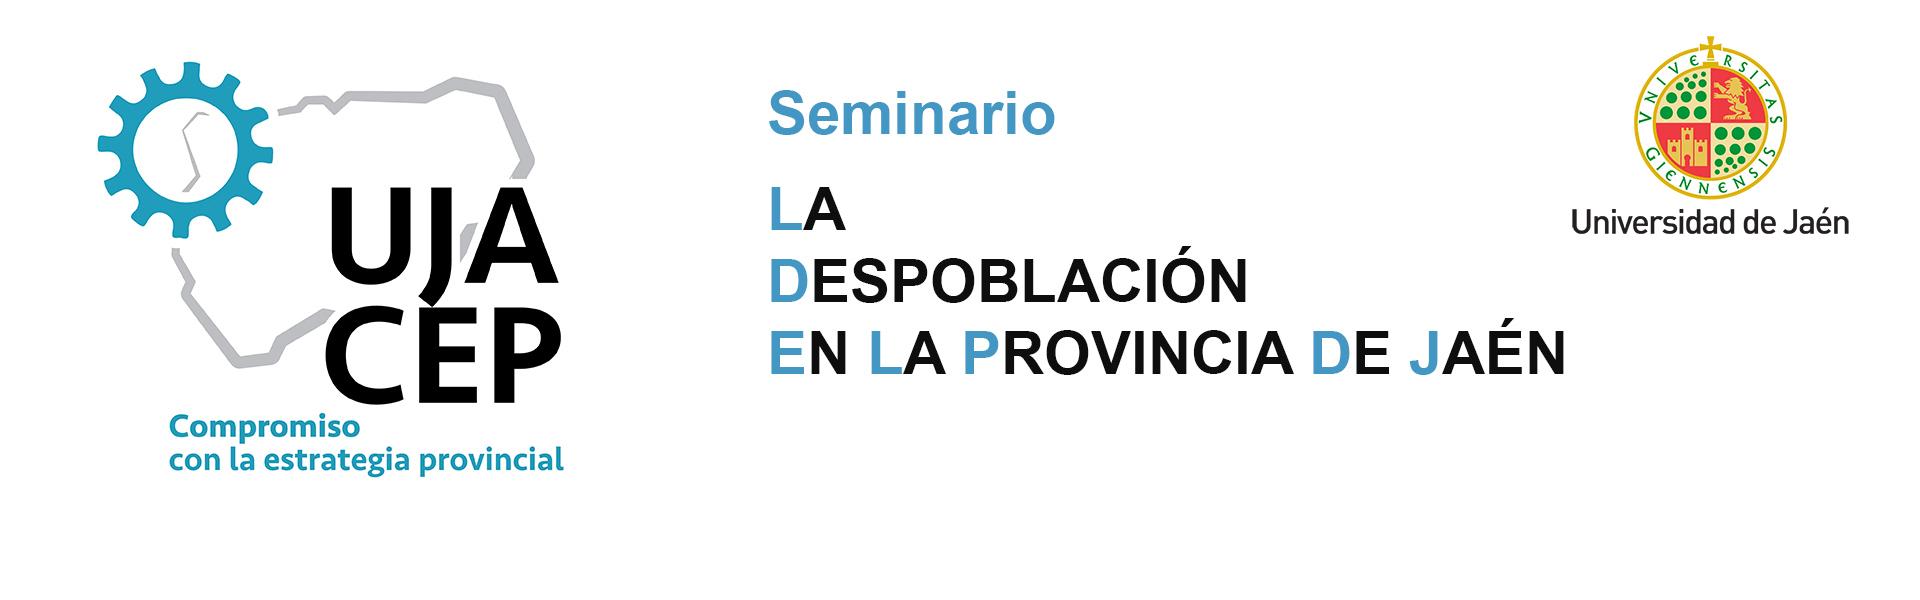 Seminario 'La despoblación en la provincia de Jaén'